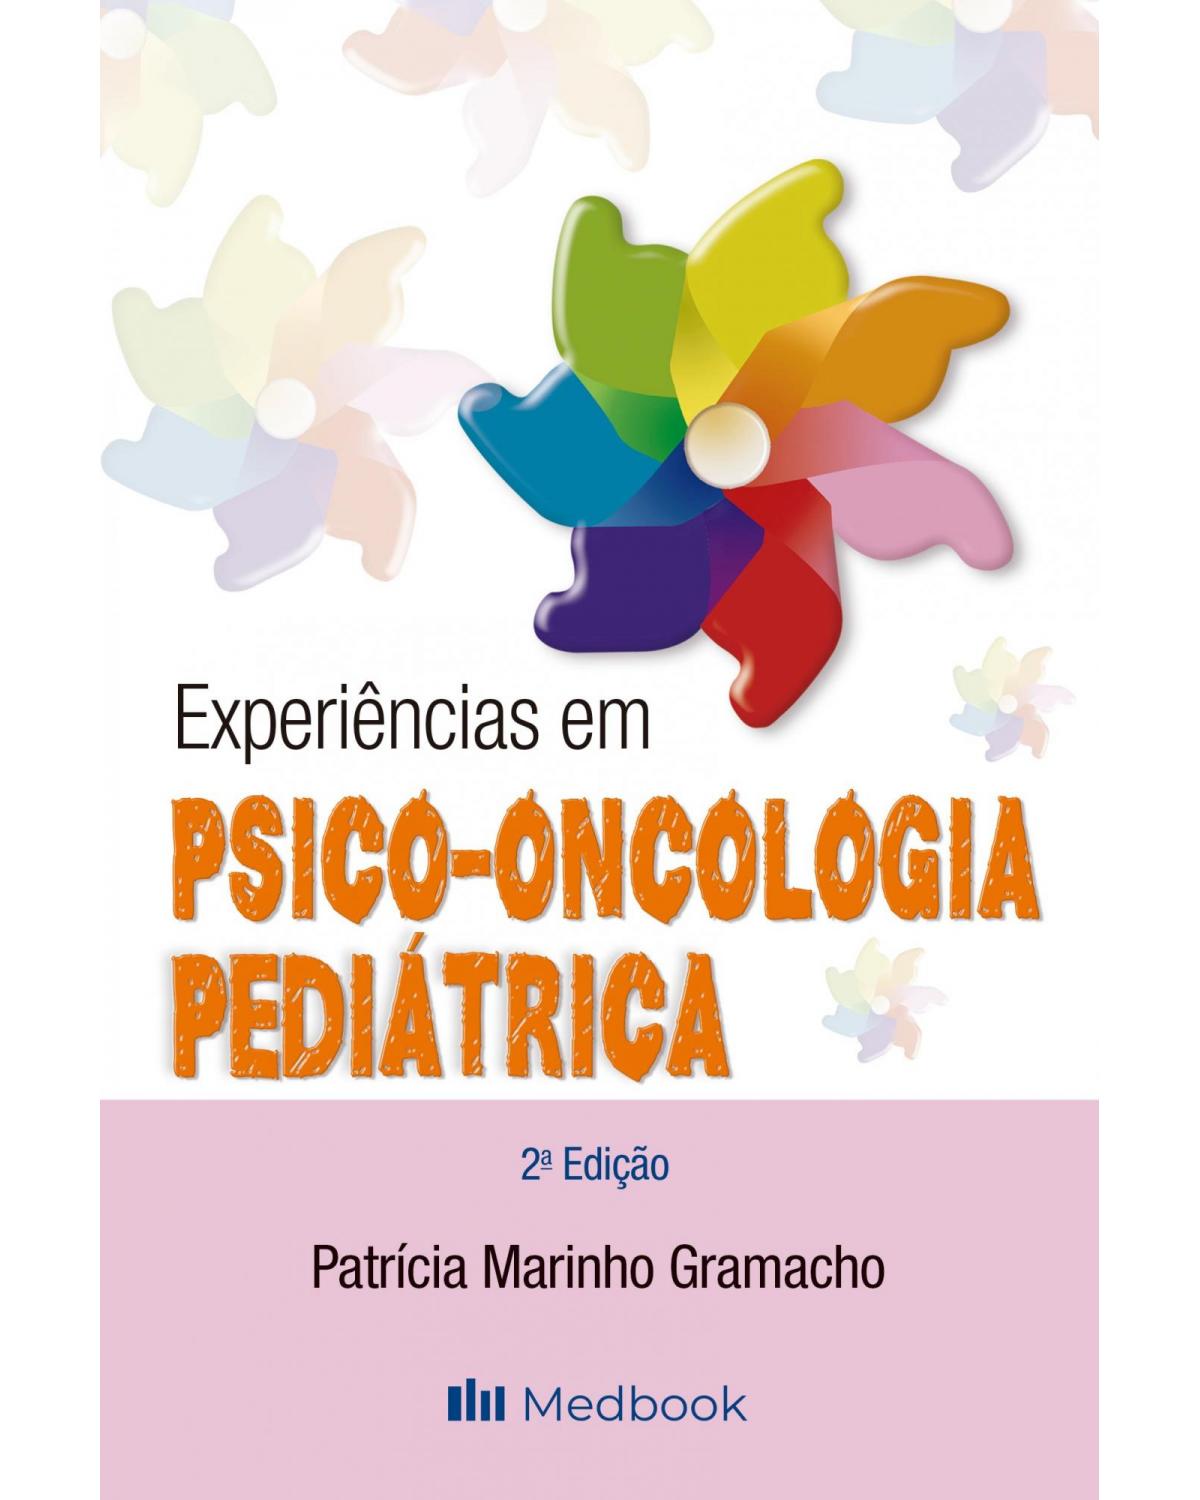 Experiências em psico-oncologia pediátrica - 2ª Edição | 2020